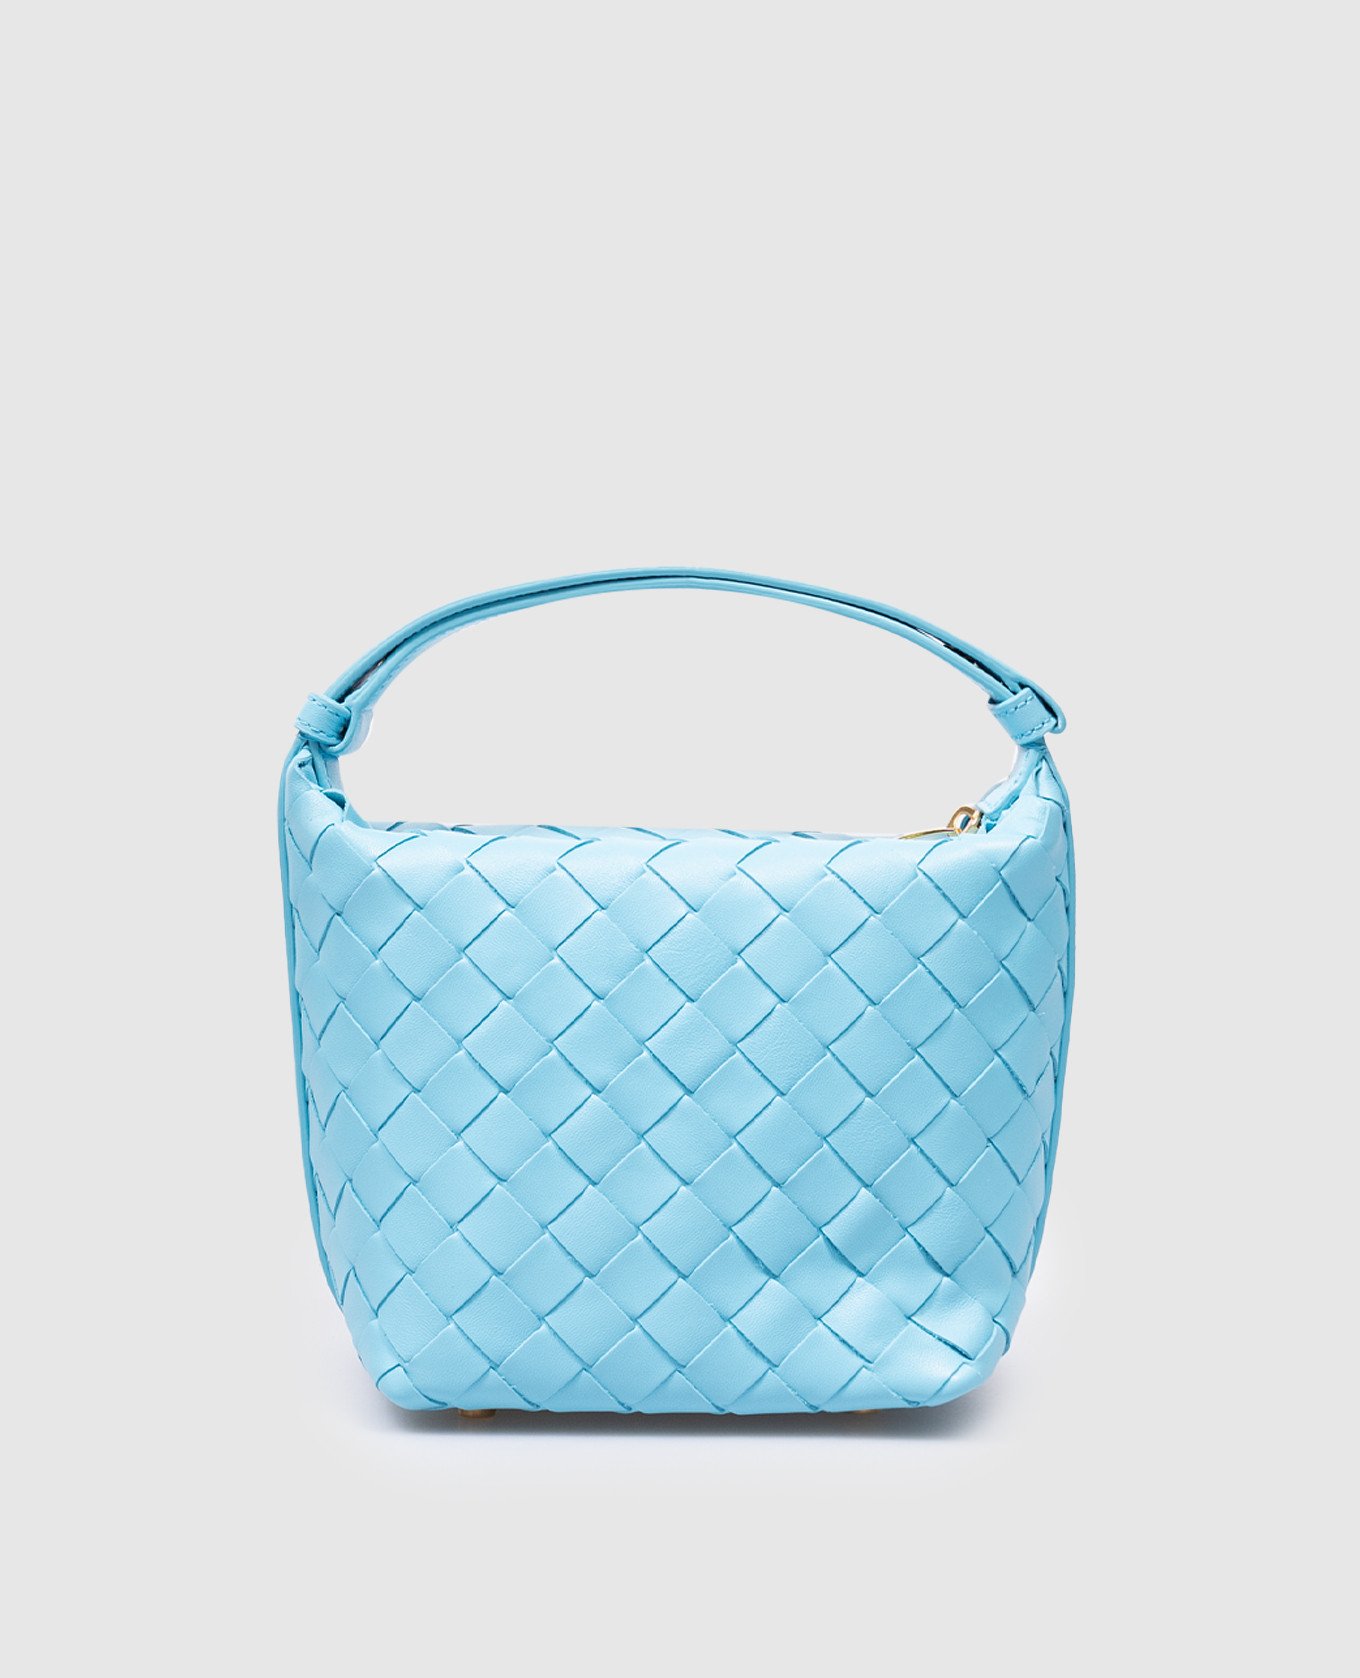 

Голубая кожаная сумка бакет-бег Candy Wallace с плетением, Голубой, Маленькие сумки